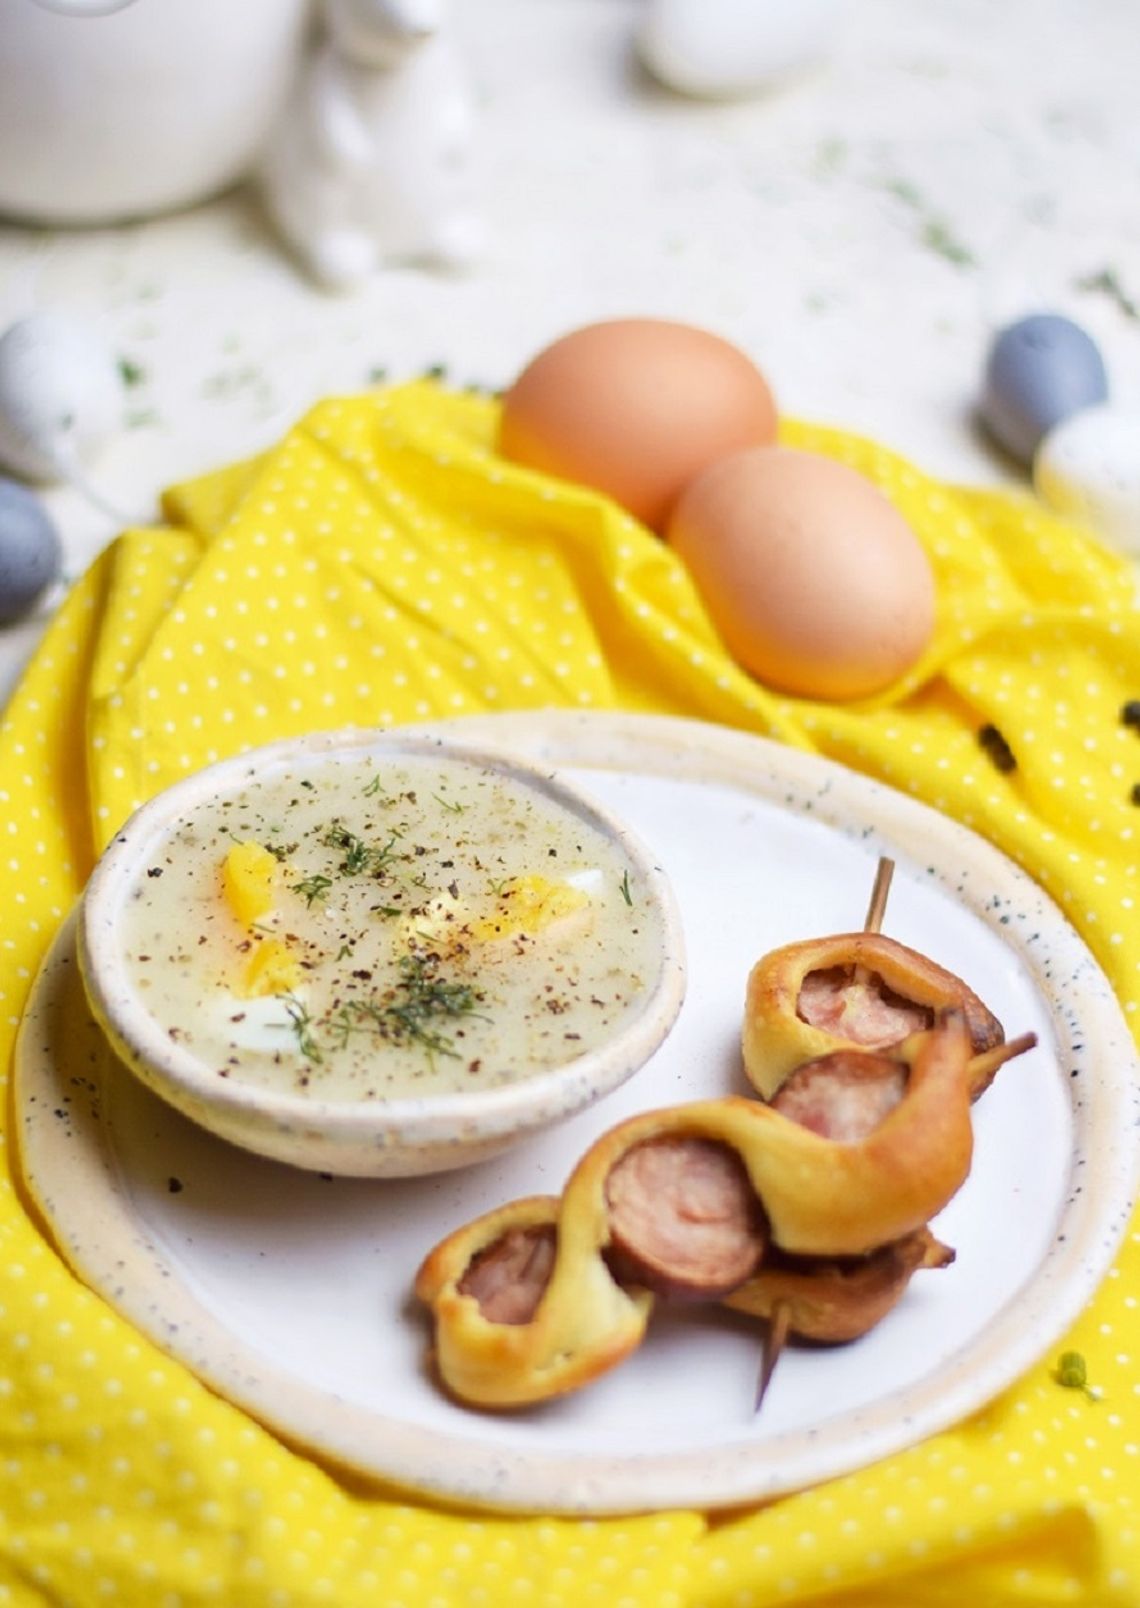 Barszcz biały na zakwasie podany z jajkiem i szaszłykiem z kiełbasy i ciasta francuskiego, przepis Anety Gwiner z Warszawy